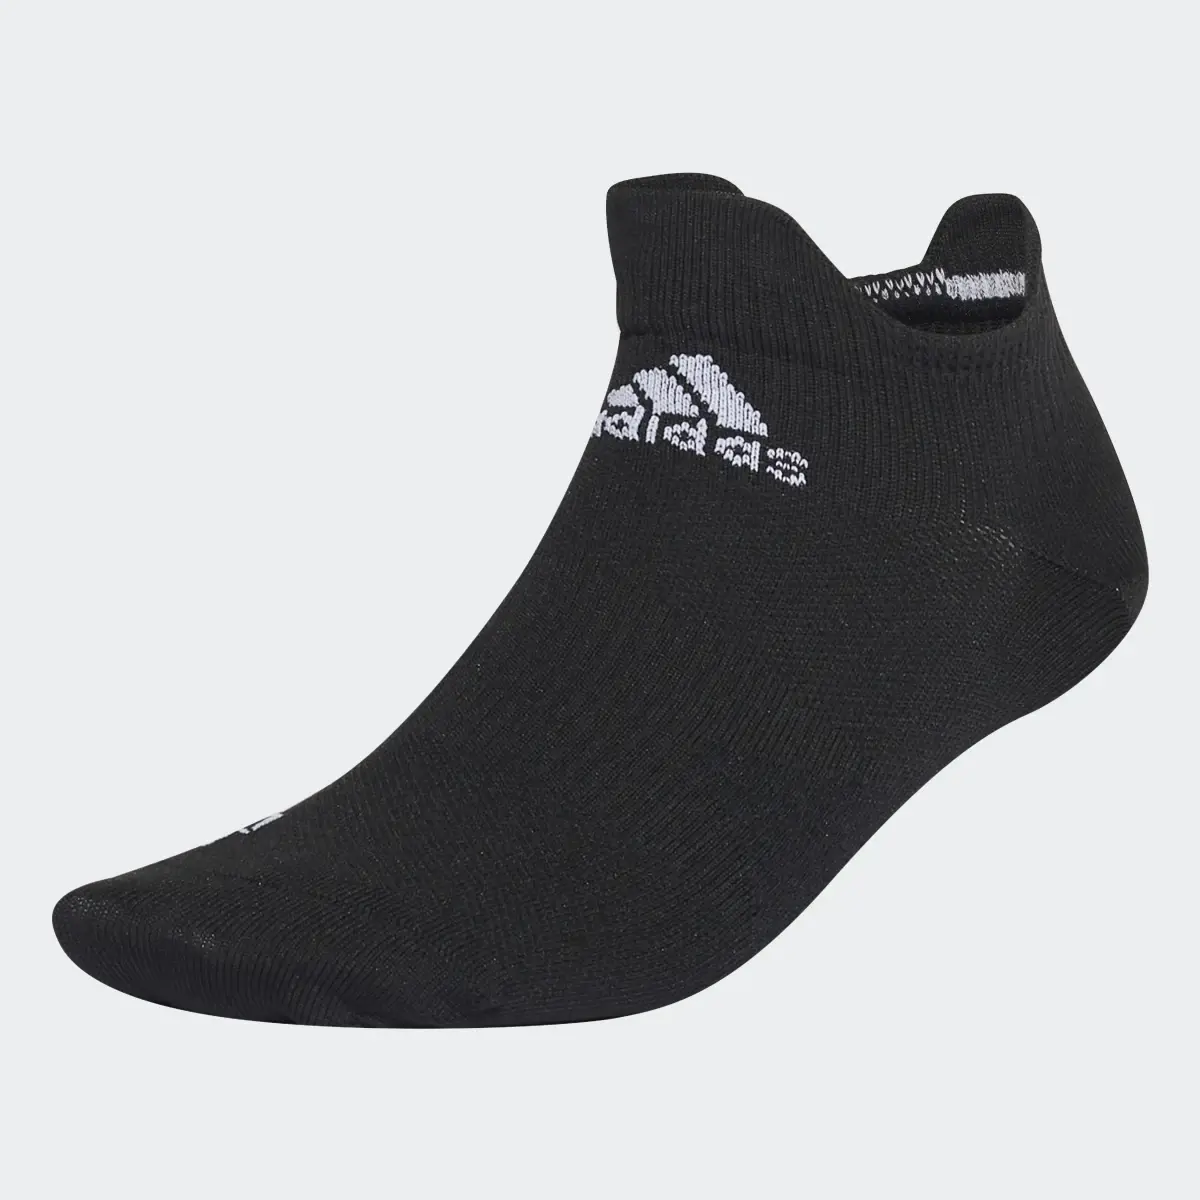 Adidas Calcetines de Running Cortos. 2